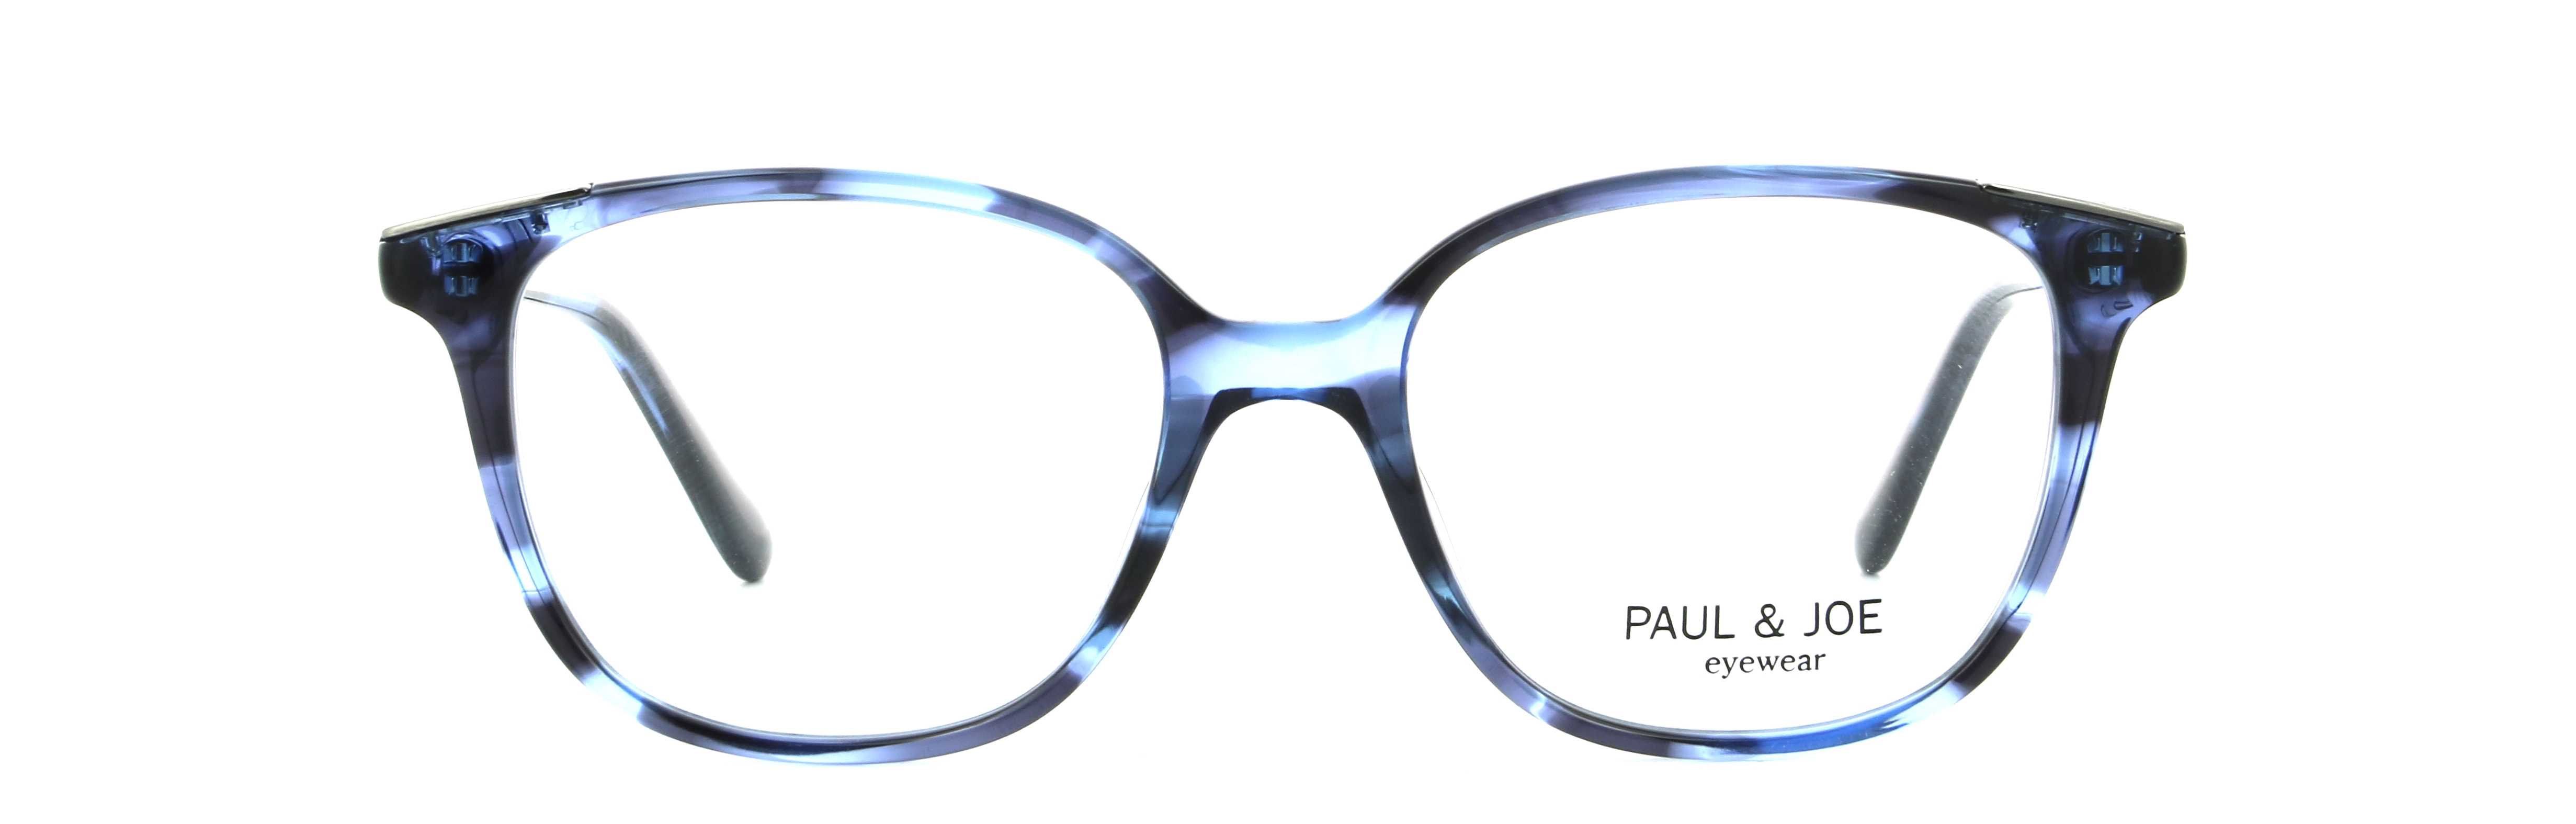 Eyeglasses PJ AZURE51 E194 49/16 PAUL & JOE